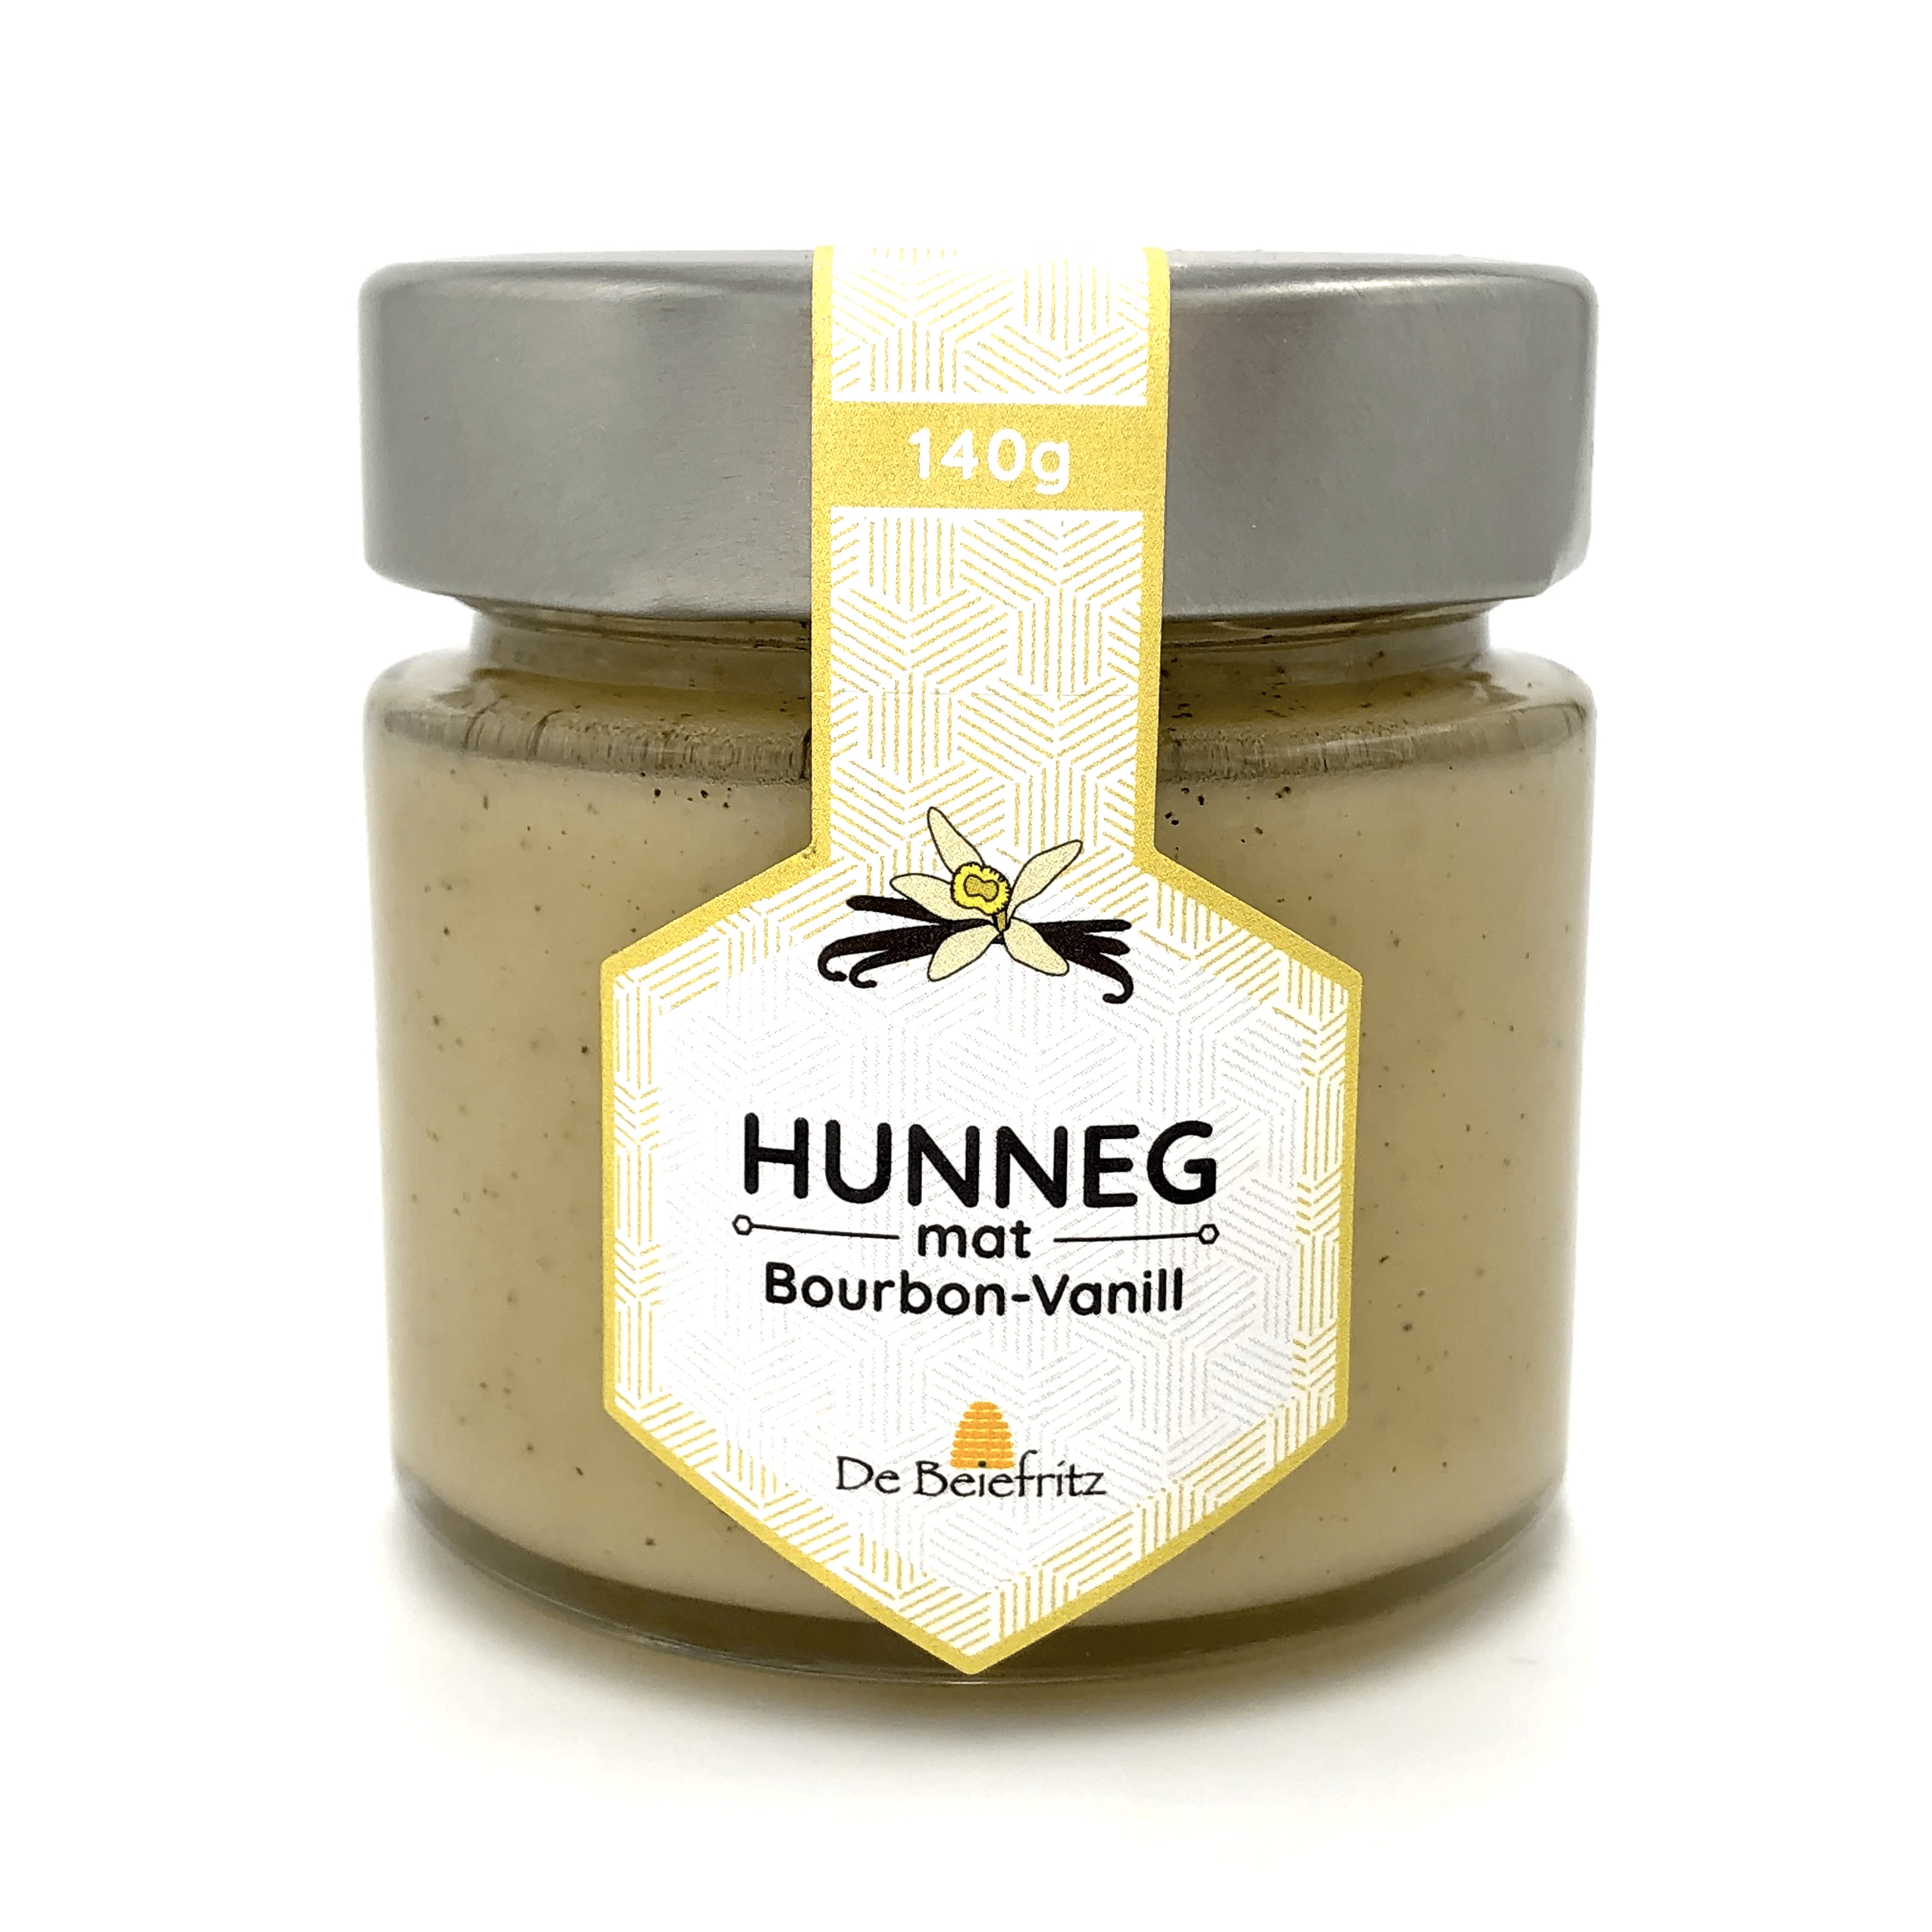 DE BEIEFRITZ - Bourbon vanilla in honey